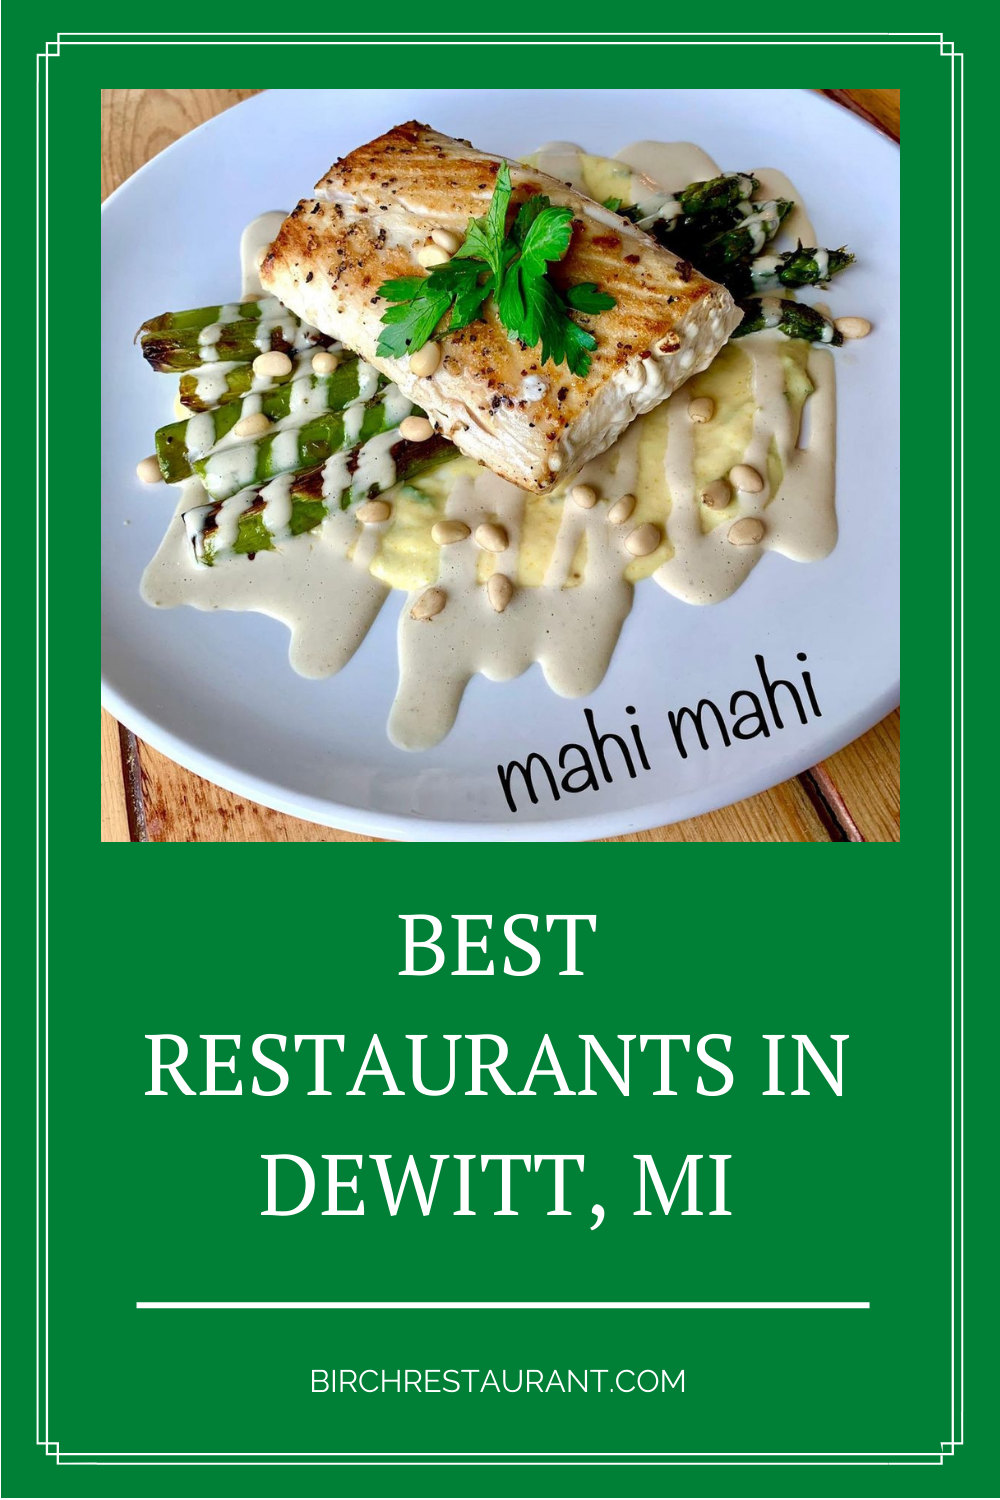 Best Restaurants in Dewitt, MI